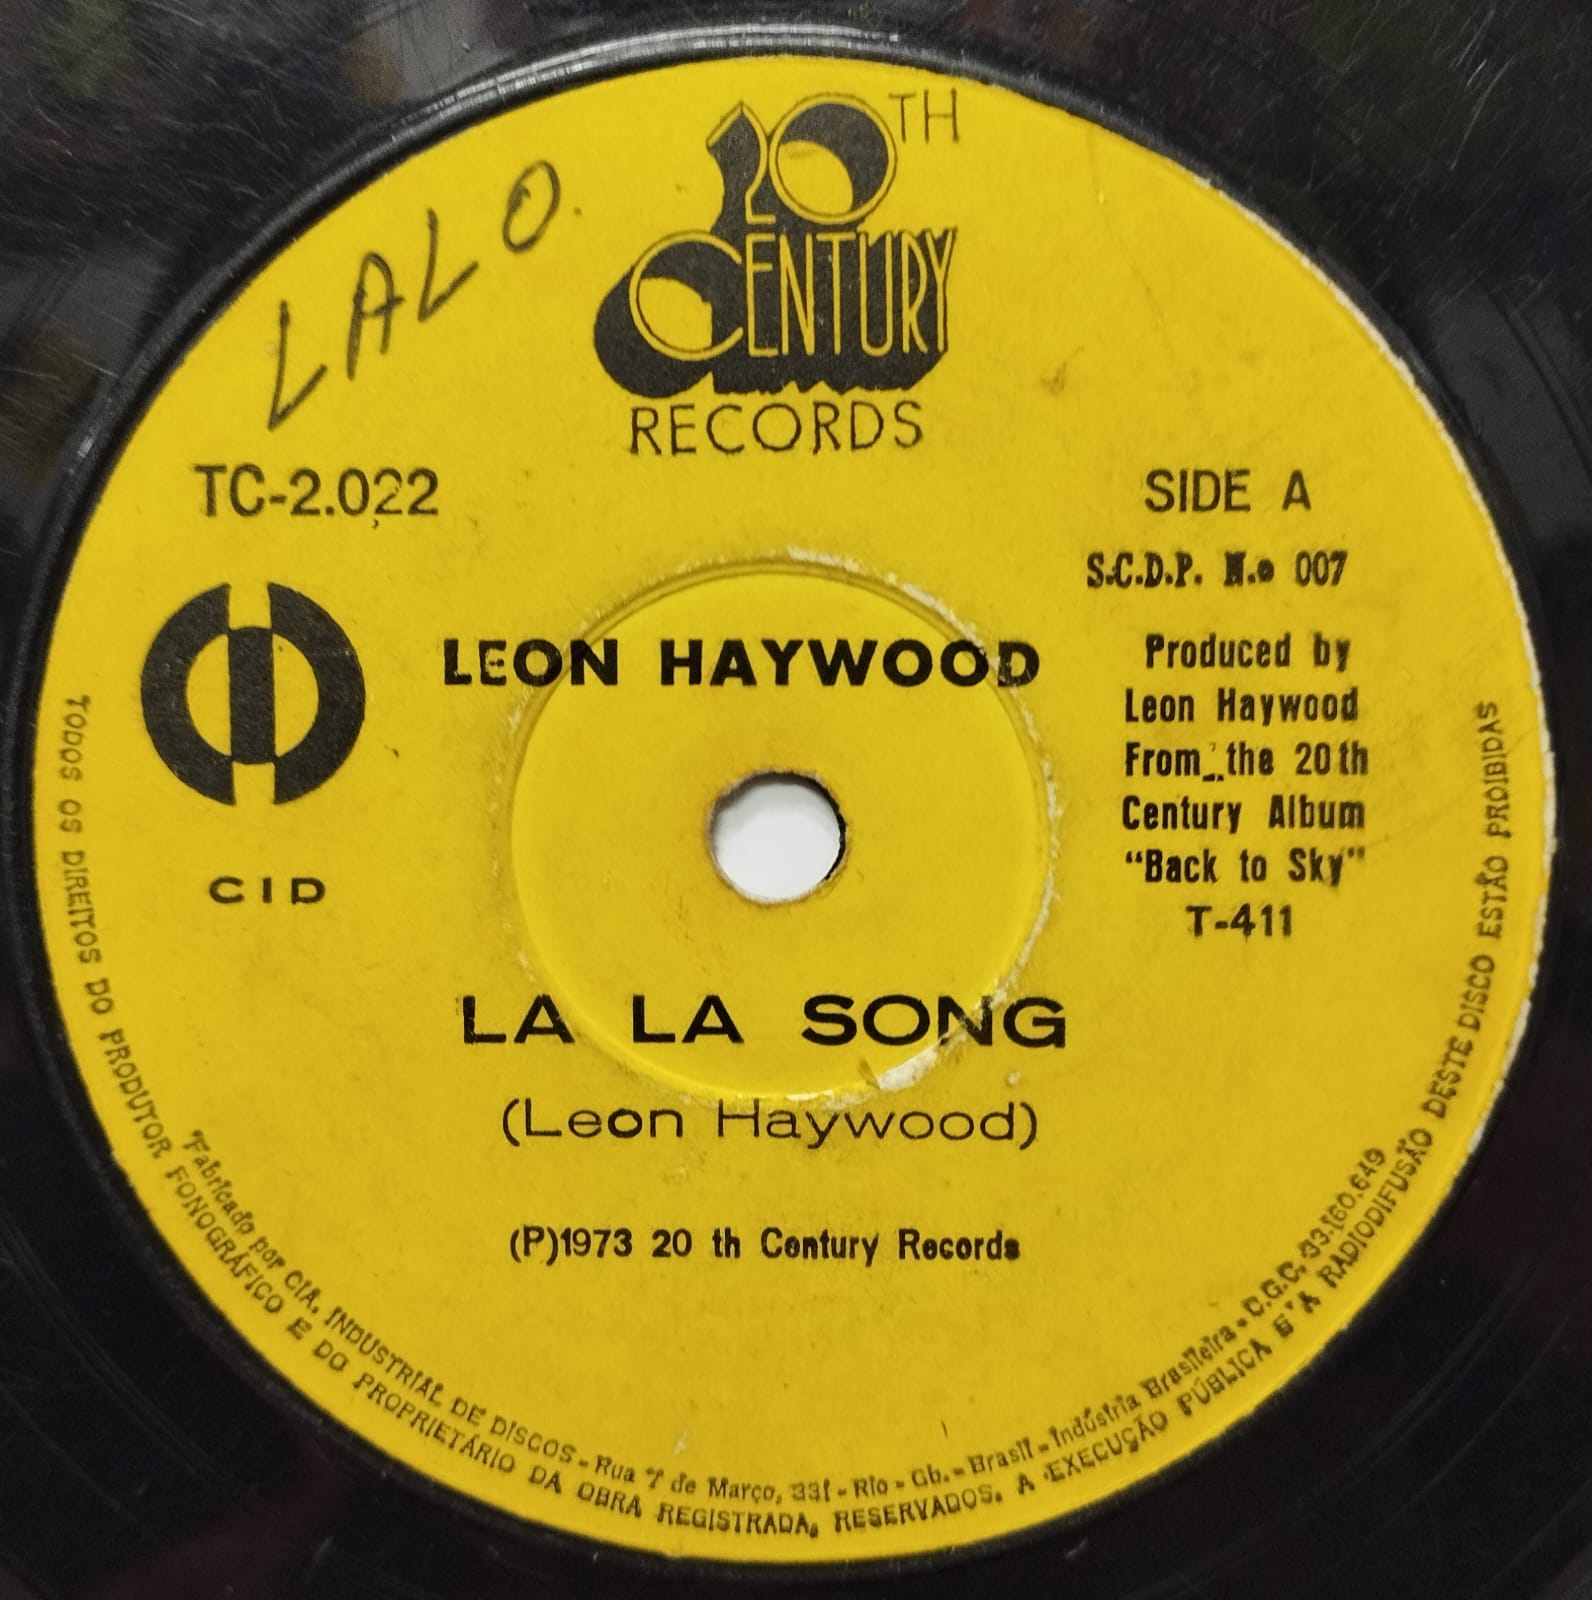 Leon Haywood - La La Song (Compacto)